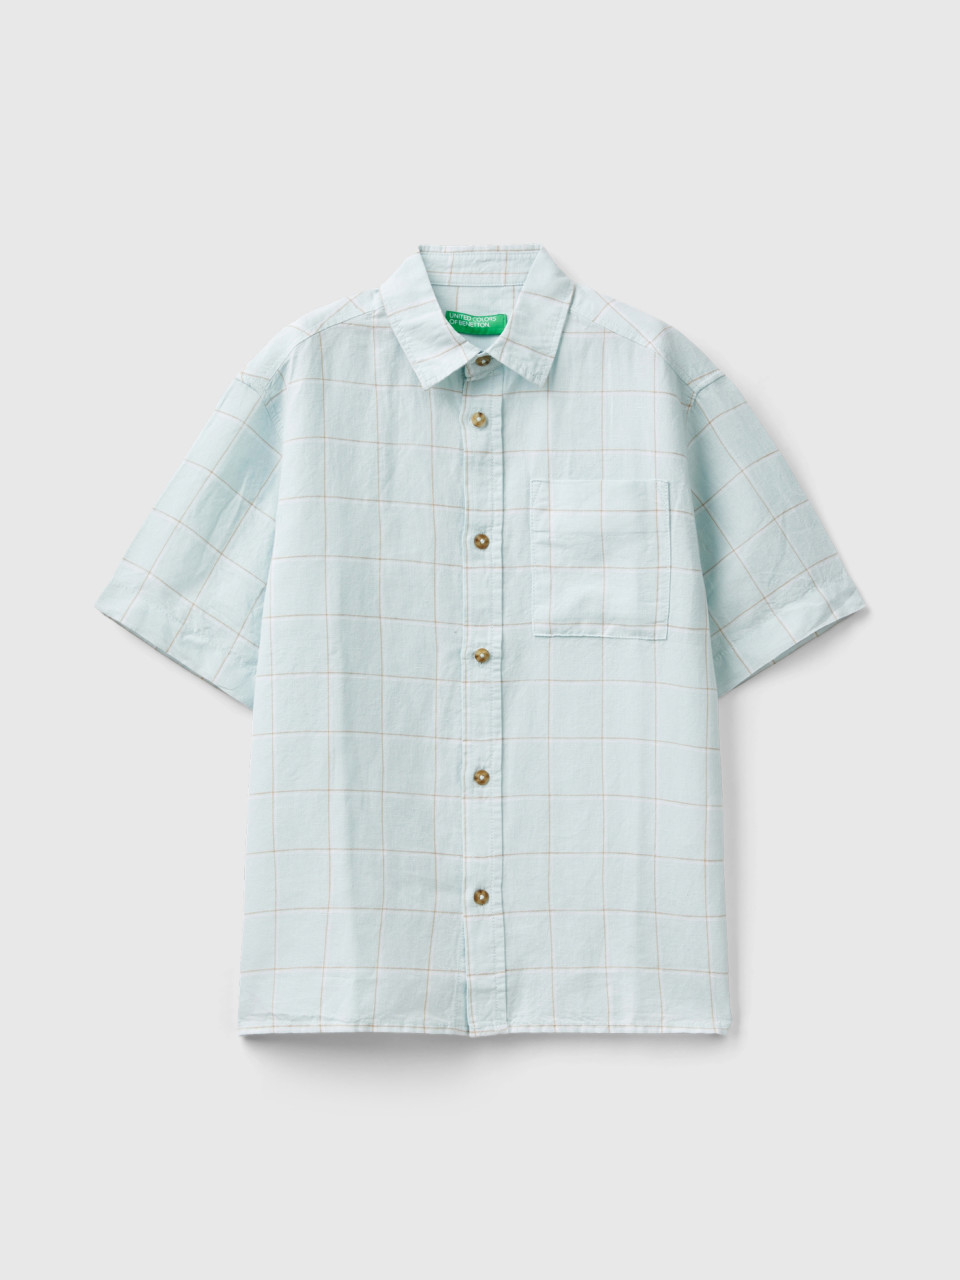 Benetton, Check Shirt In Linen Blend, Aqua, Kids